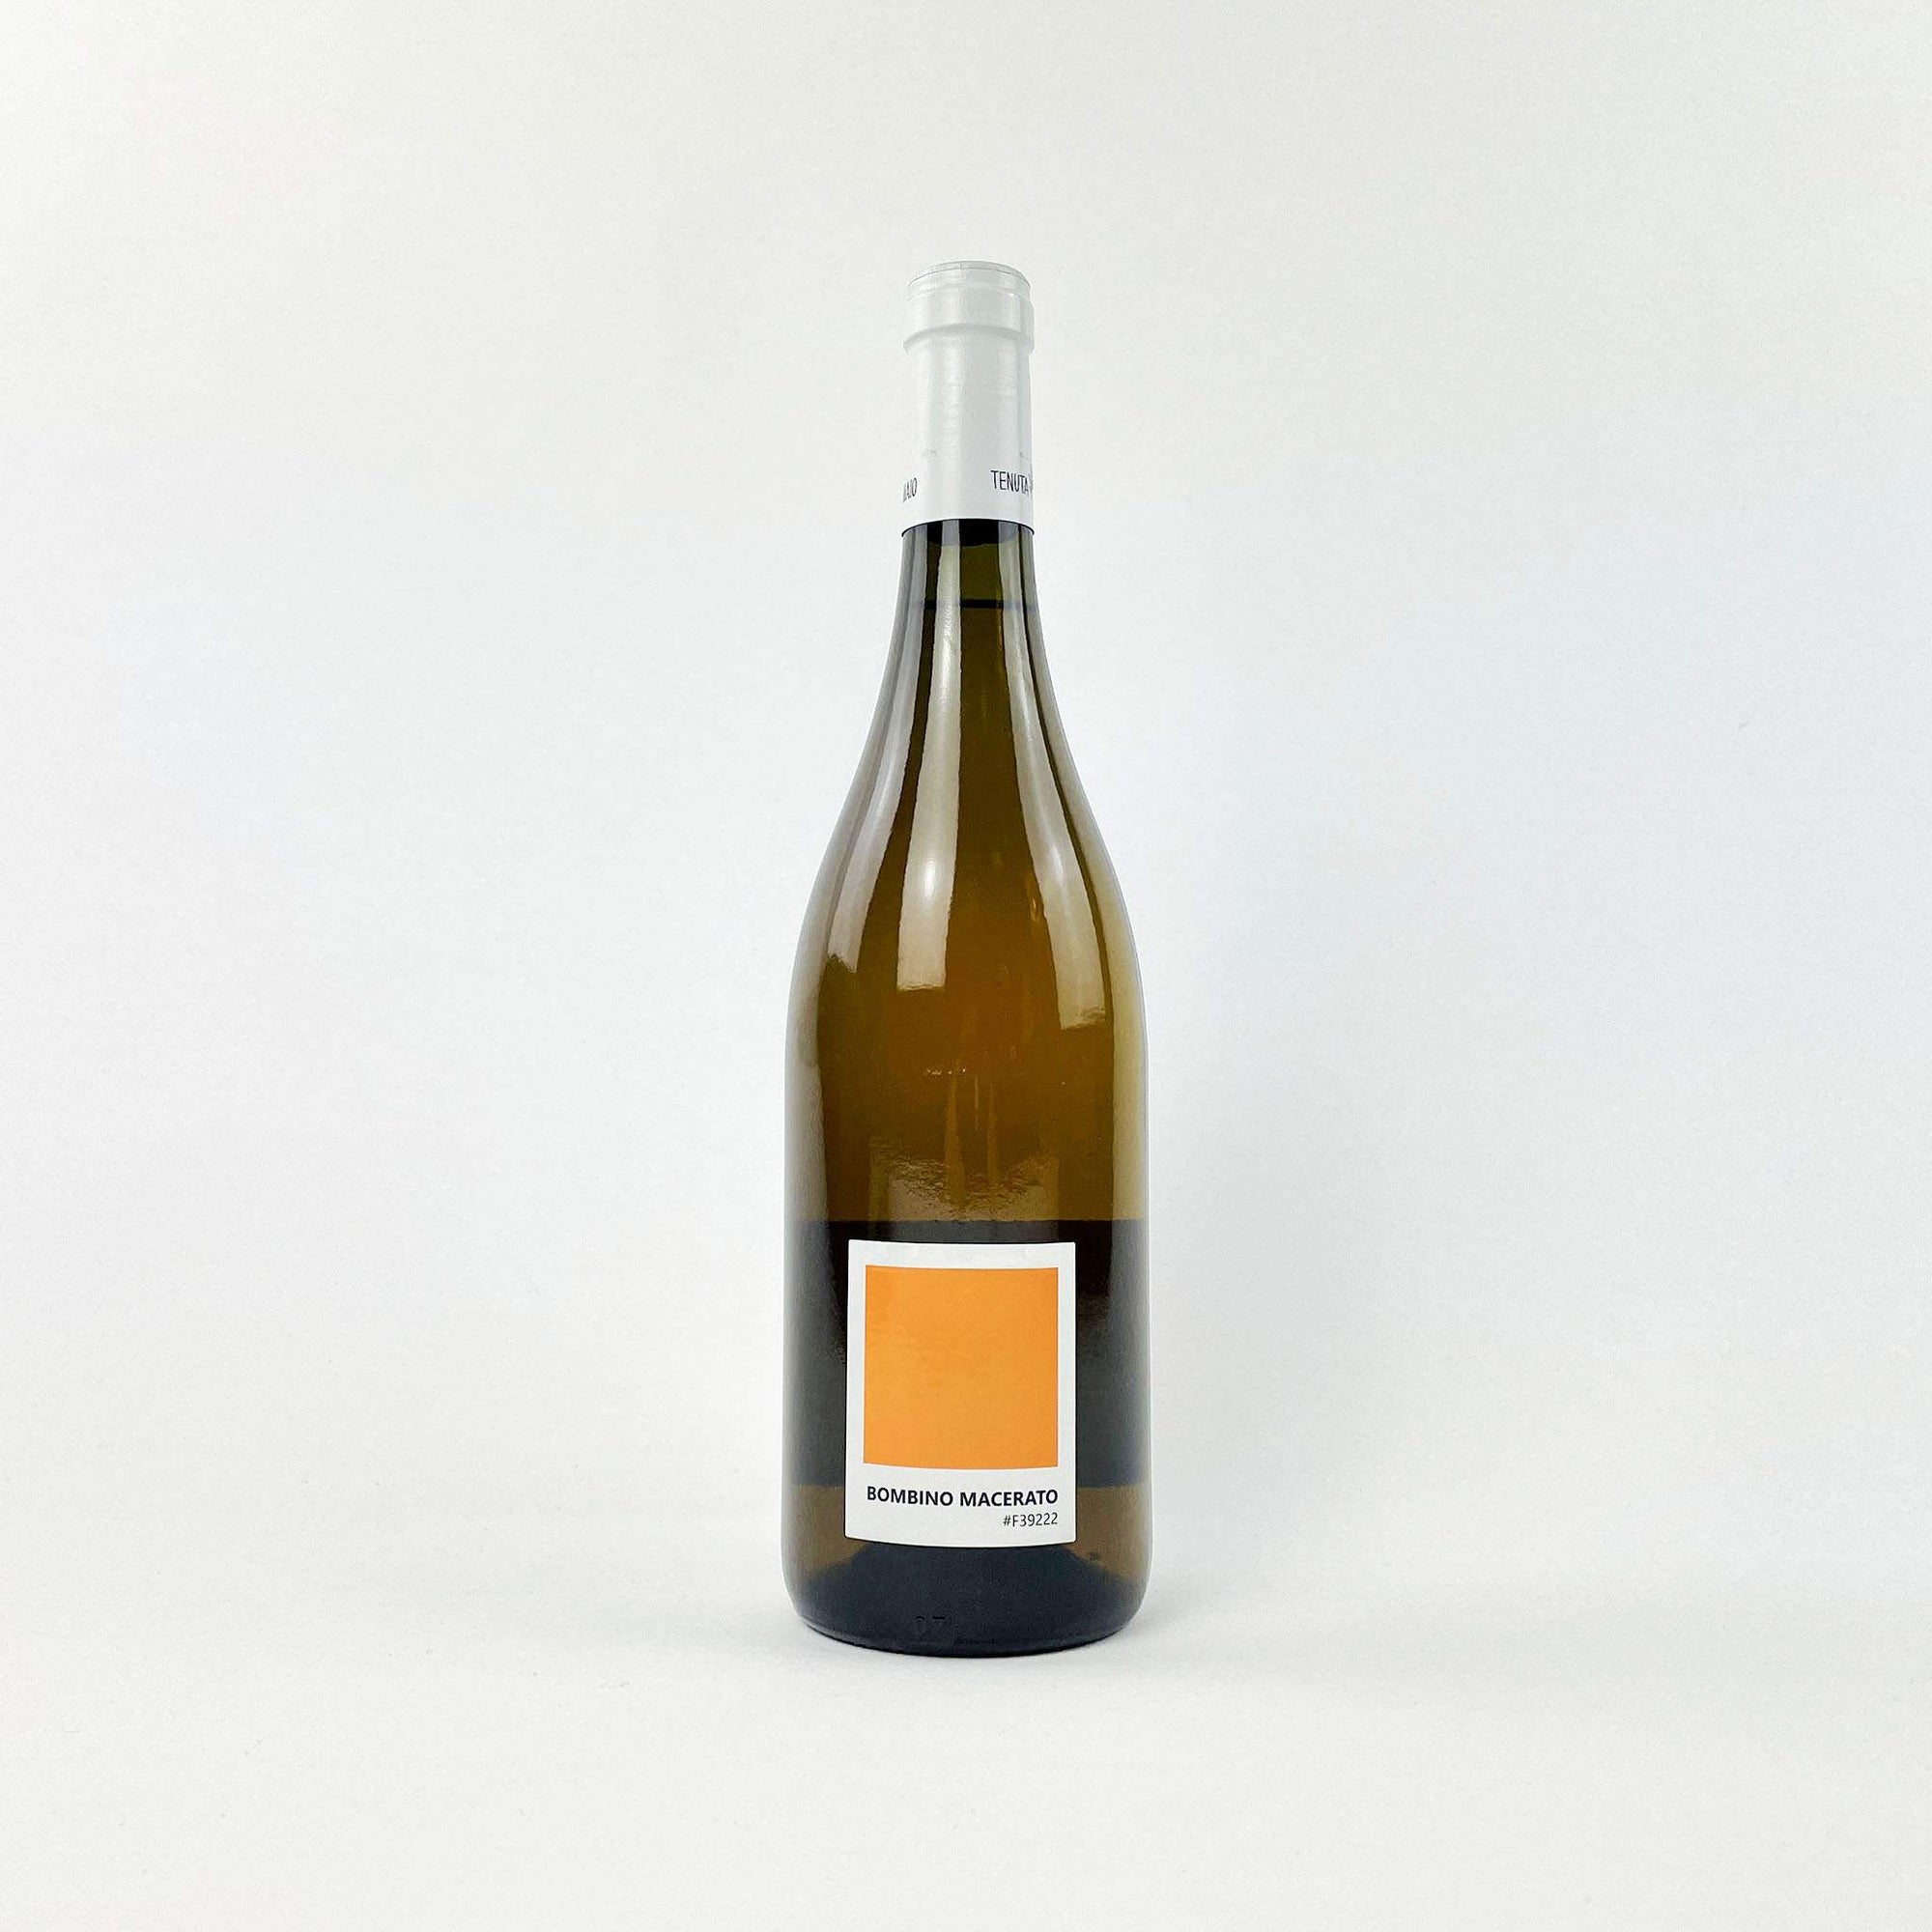 A Bottle Of Orange Macerated Wine Bombino Macerato by Tenuta de Maio